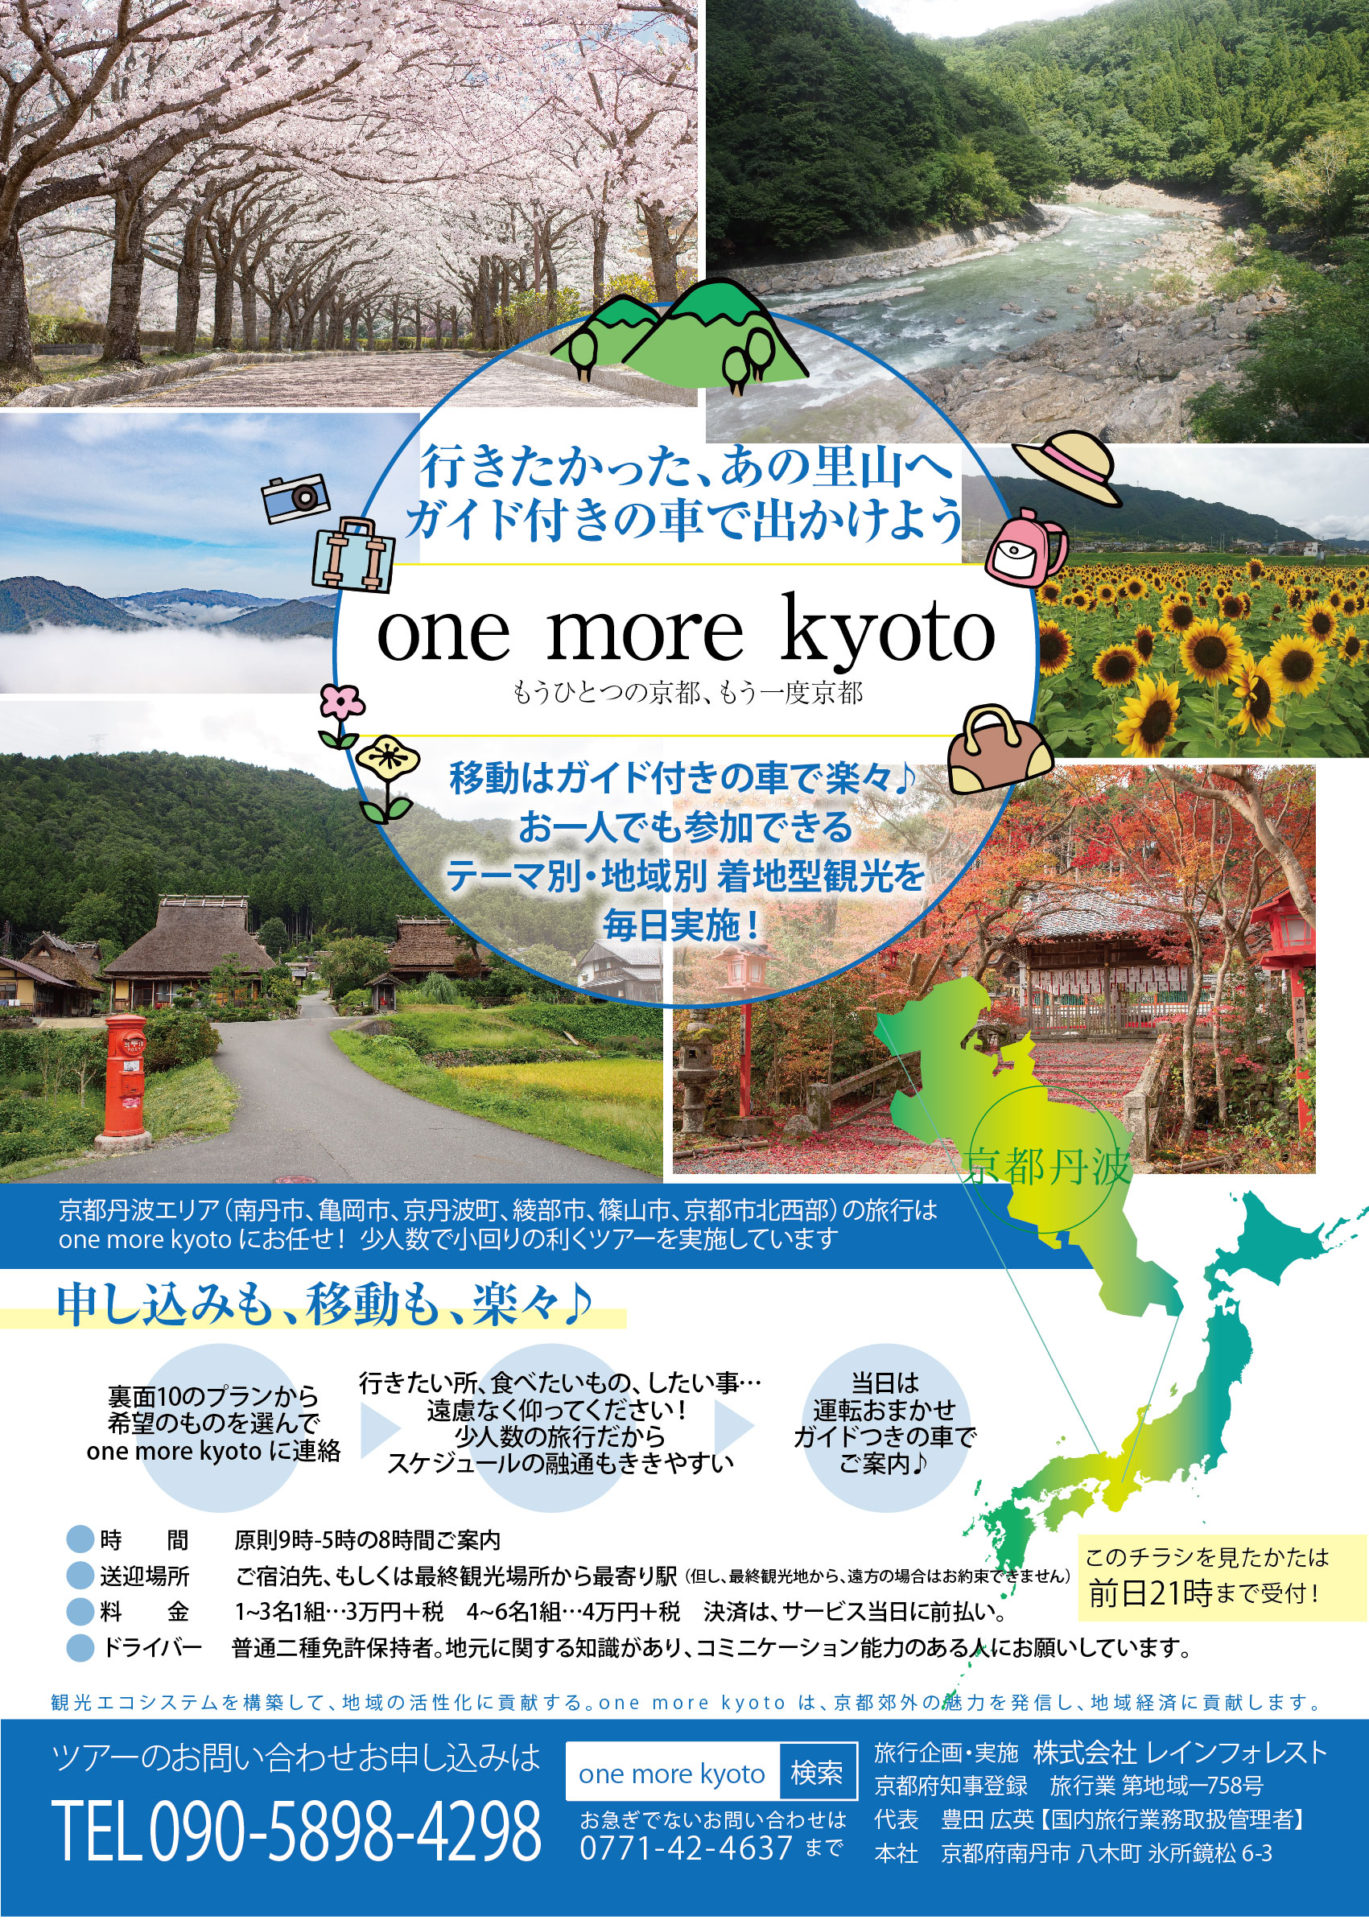 チラシ 名刺 ショップカード Webサイト 旅行企画の One More Kyoto わざどころpon